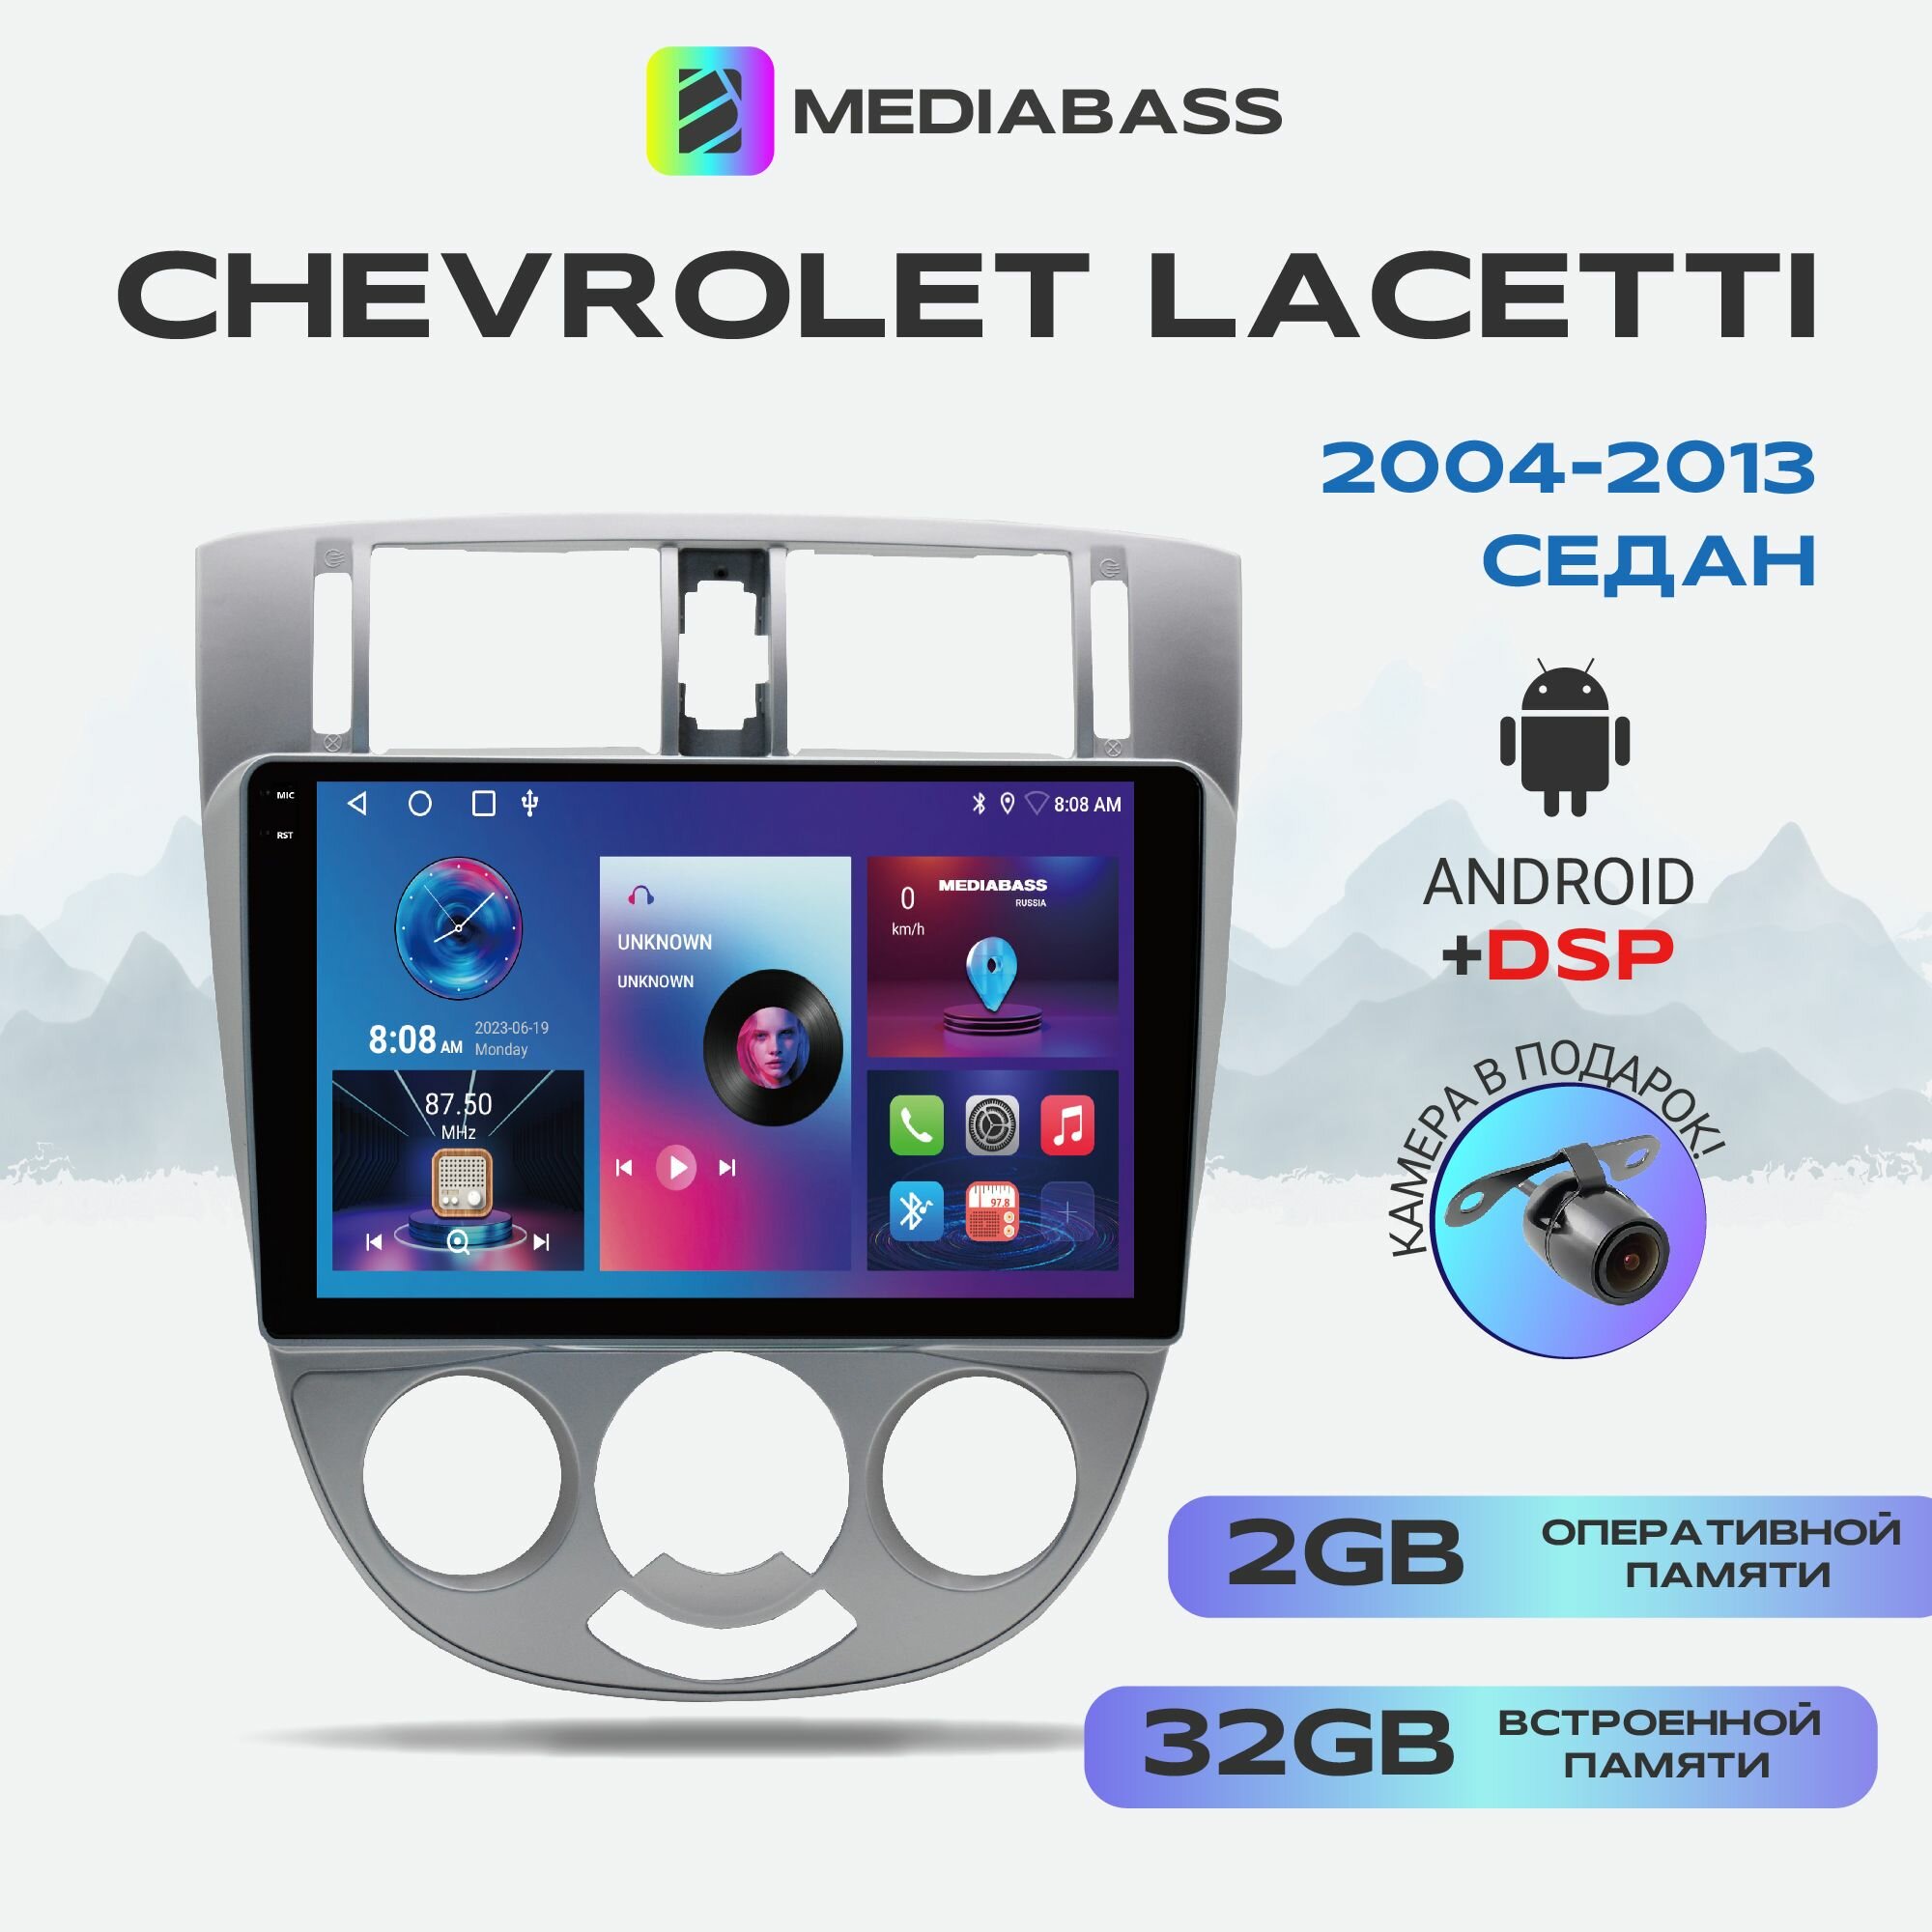 Автомагнитола M2 PRO Chevrolet Lacetti седан, 2/32ГБ, Android 12 / Шевроле Лачетти седан, 4-ядерный процессор, QLED экран с разрешением 1280*720, DSP, чип-усилитель YD7388